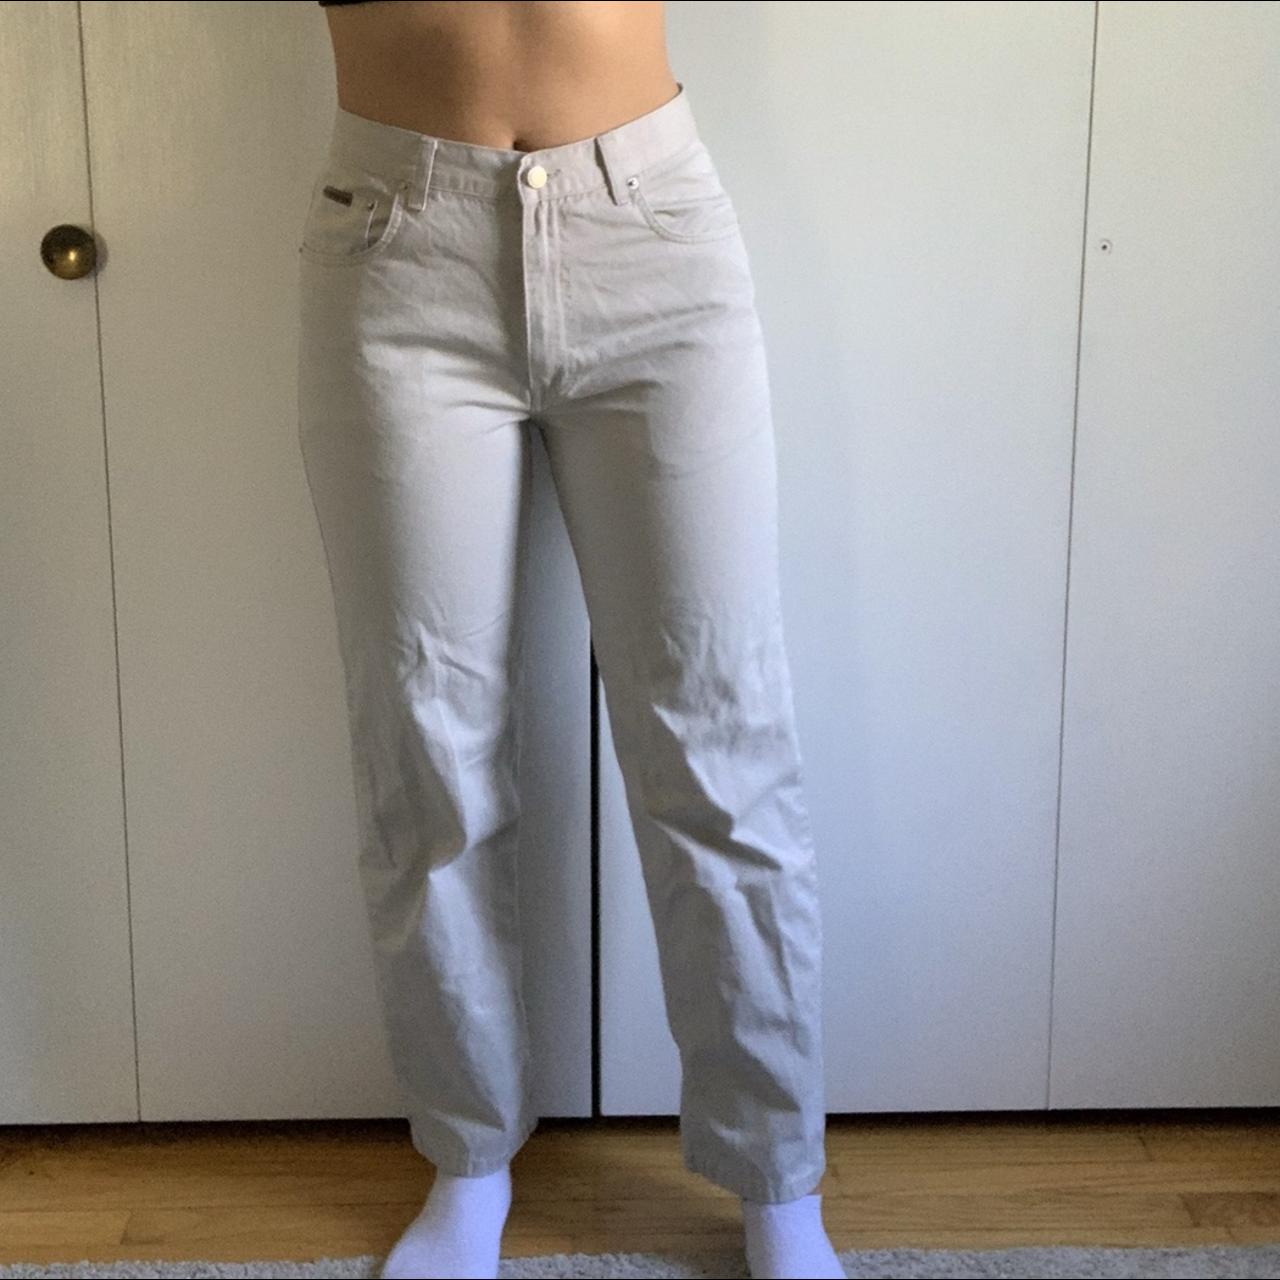 Calvin Klein khaki/tan jeans! 100% cotton, perfect... - Depop